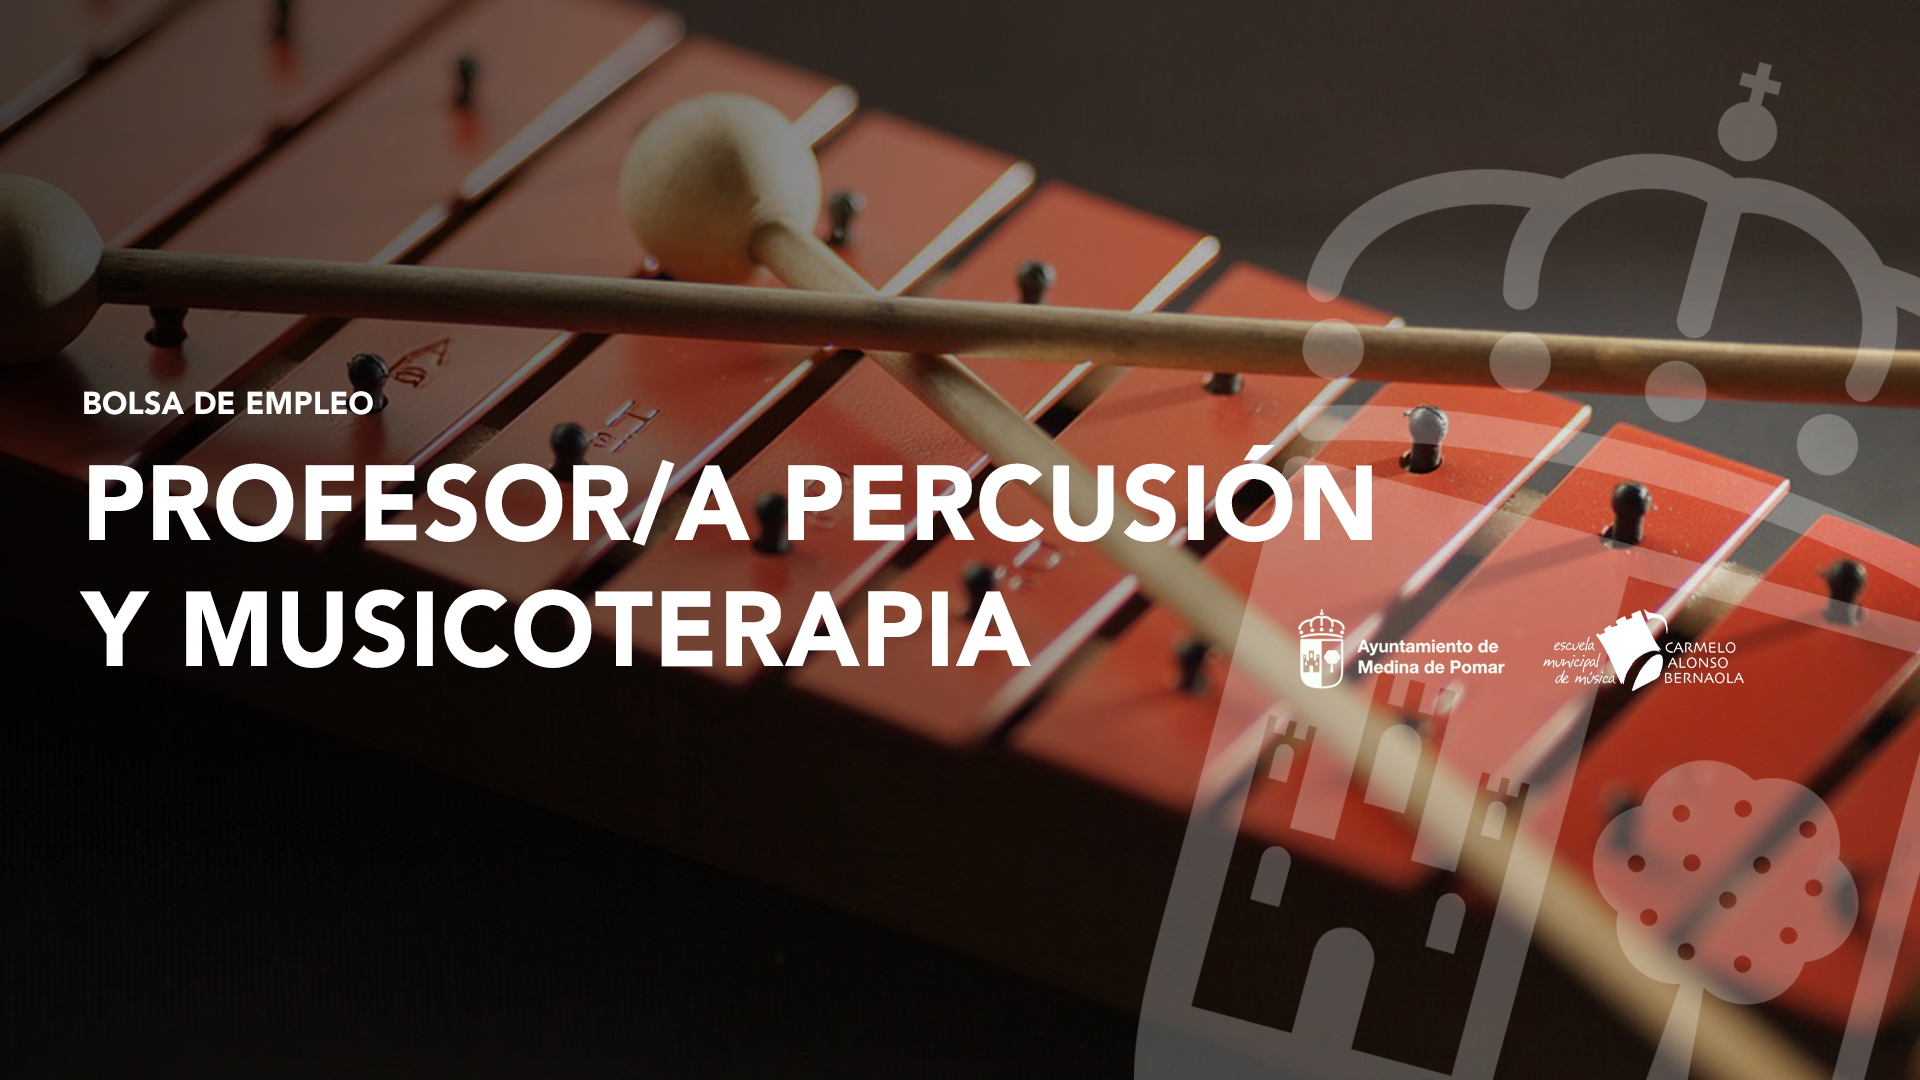 BOLSA DE EMPLEO PROFESOR/A PERSUSIÓN Y MUSICOTERAPIA